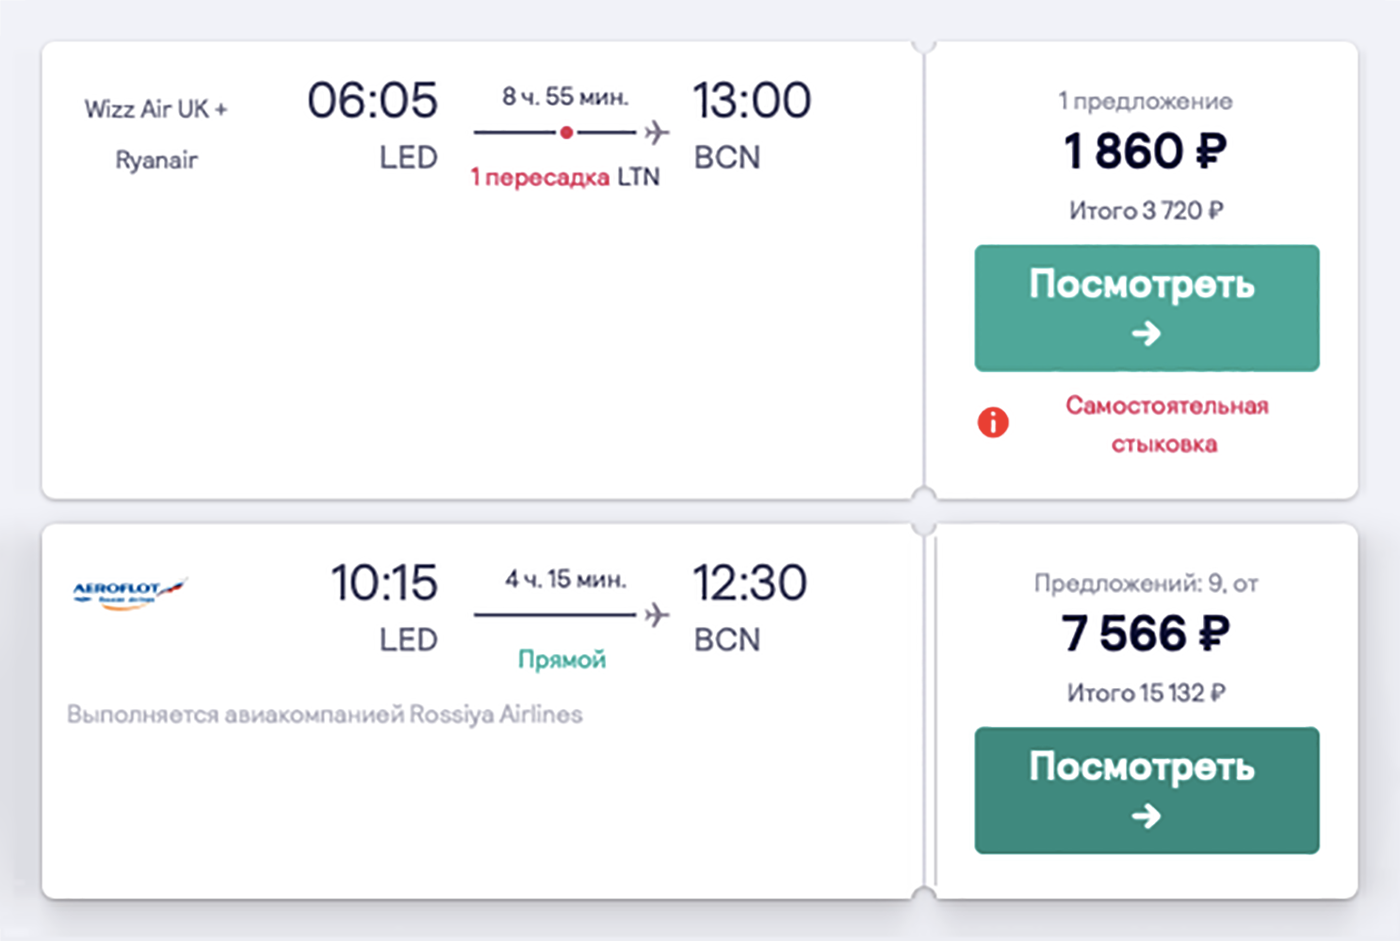 Недавно Wizz Air начал летать в Петербург. Он предлагал билеты в Барселону за 3720 <span class=ruble>Р</span> в обе стороны с пересадкой в Лондоне. Перелет «Аэрофлотом» обойдется в 15 132 <span class=ruble>Р</span> в обе стороны